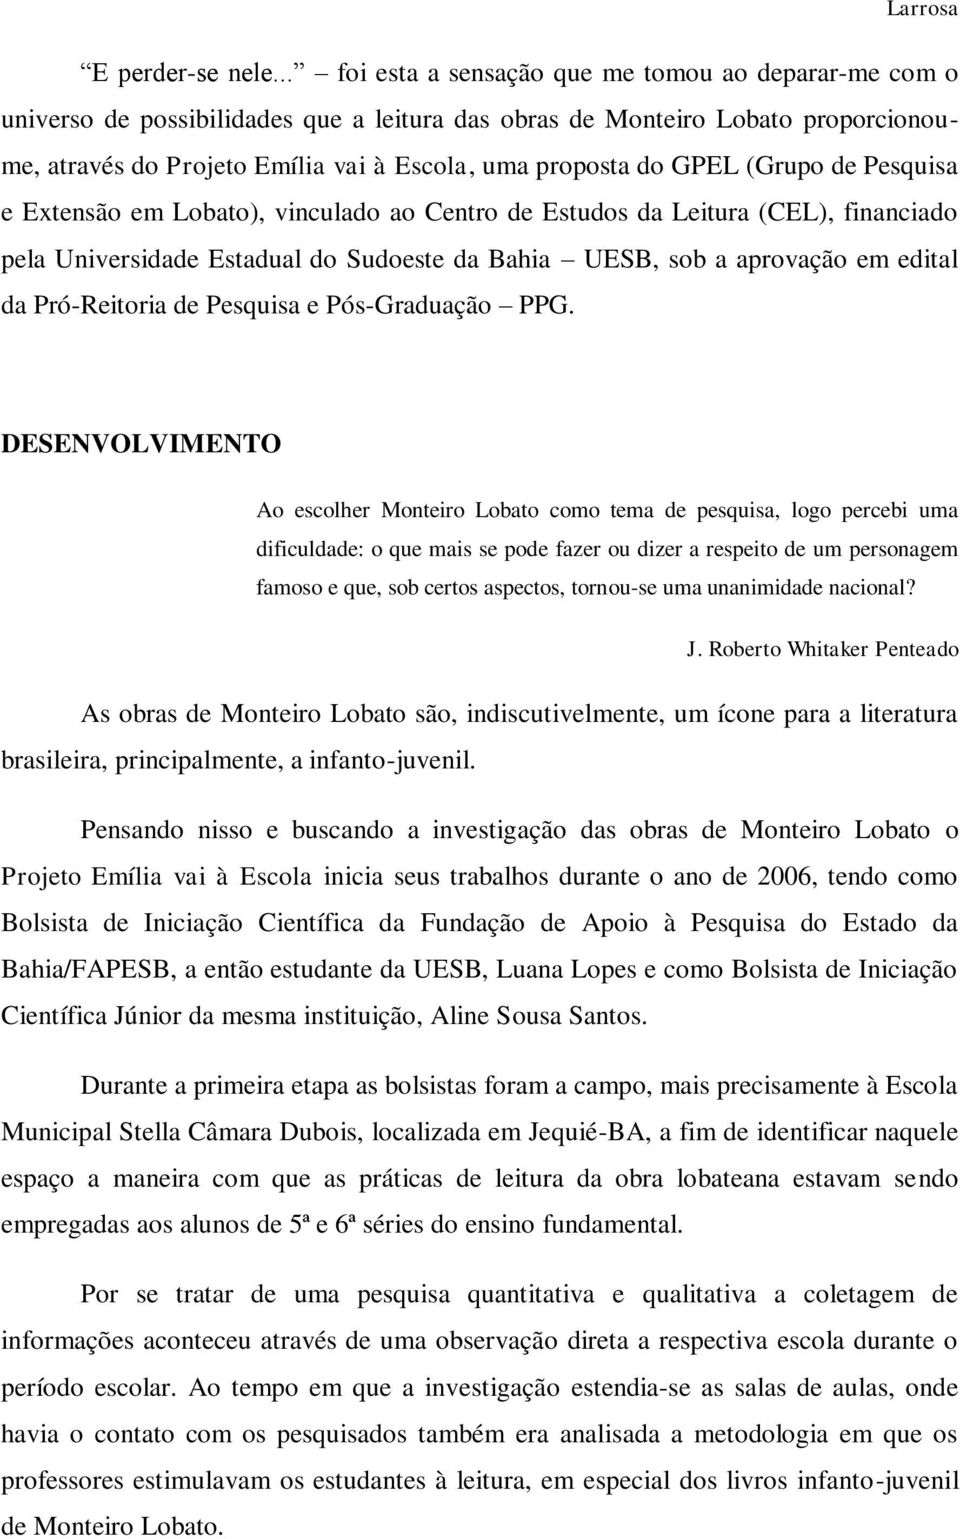 GPEL (Grupo de Pesquisa e Extensão em Lobato), vinculado ao Centro de Estudos da Leitura (CEL), financiado pela Universidade Estadual do Sudoeste da Bahia UESB, sob a aprovação em edital da